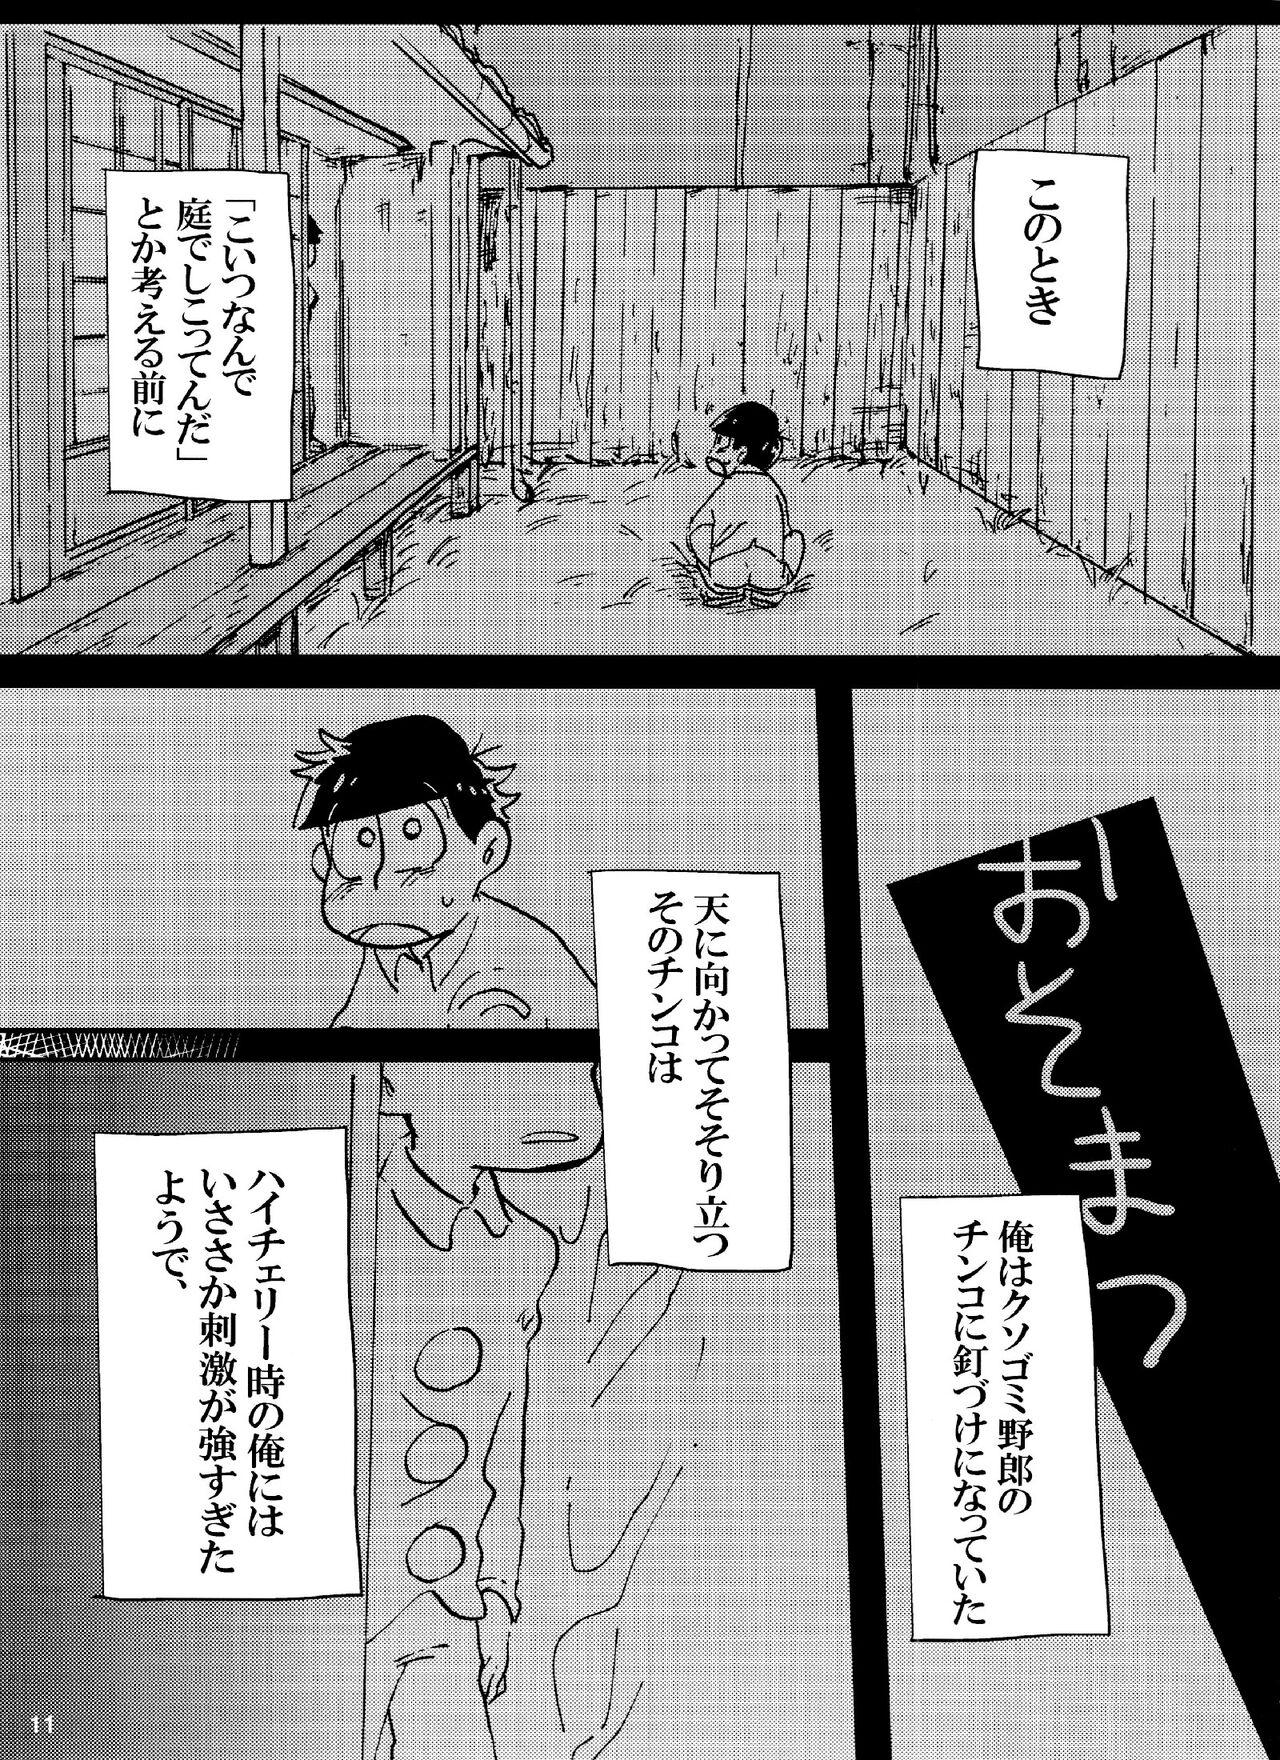 Bigbutt Baka to shiko matsu ga ma guwa u hanashi - Osomatsu san Old Young - Page 11